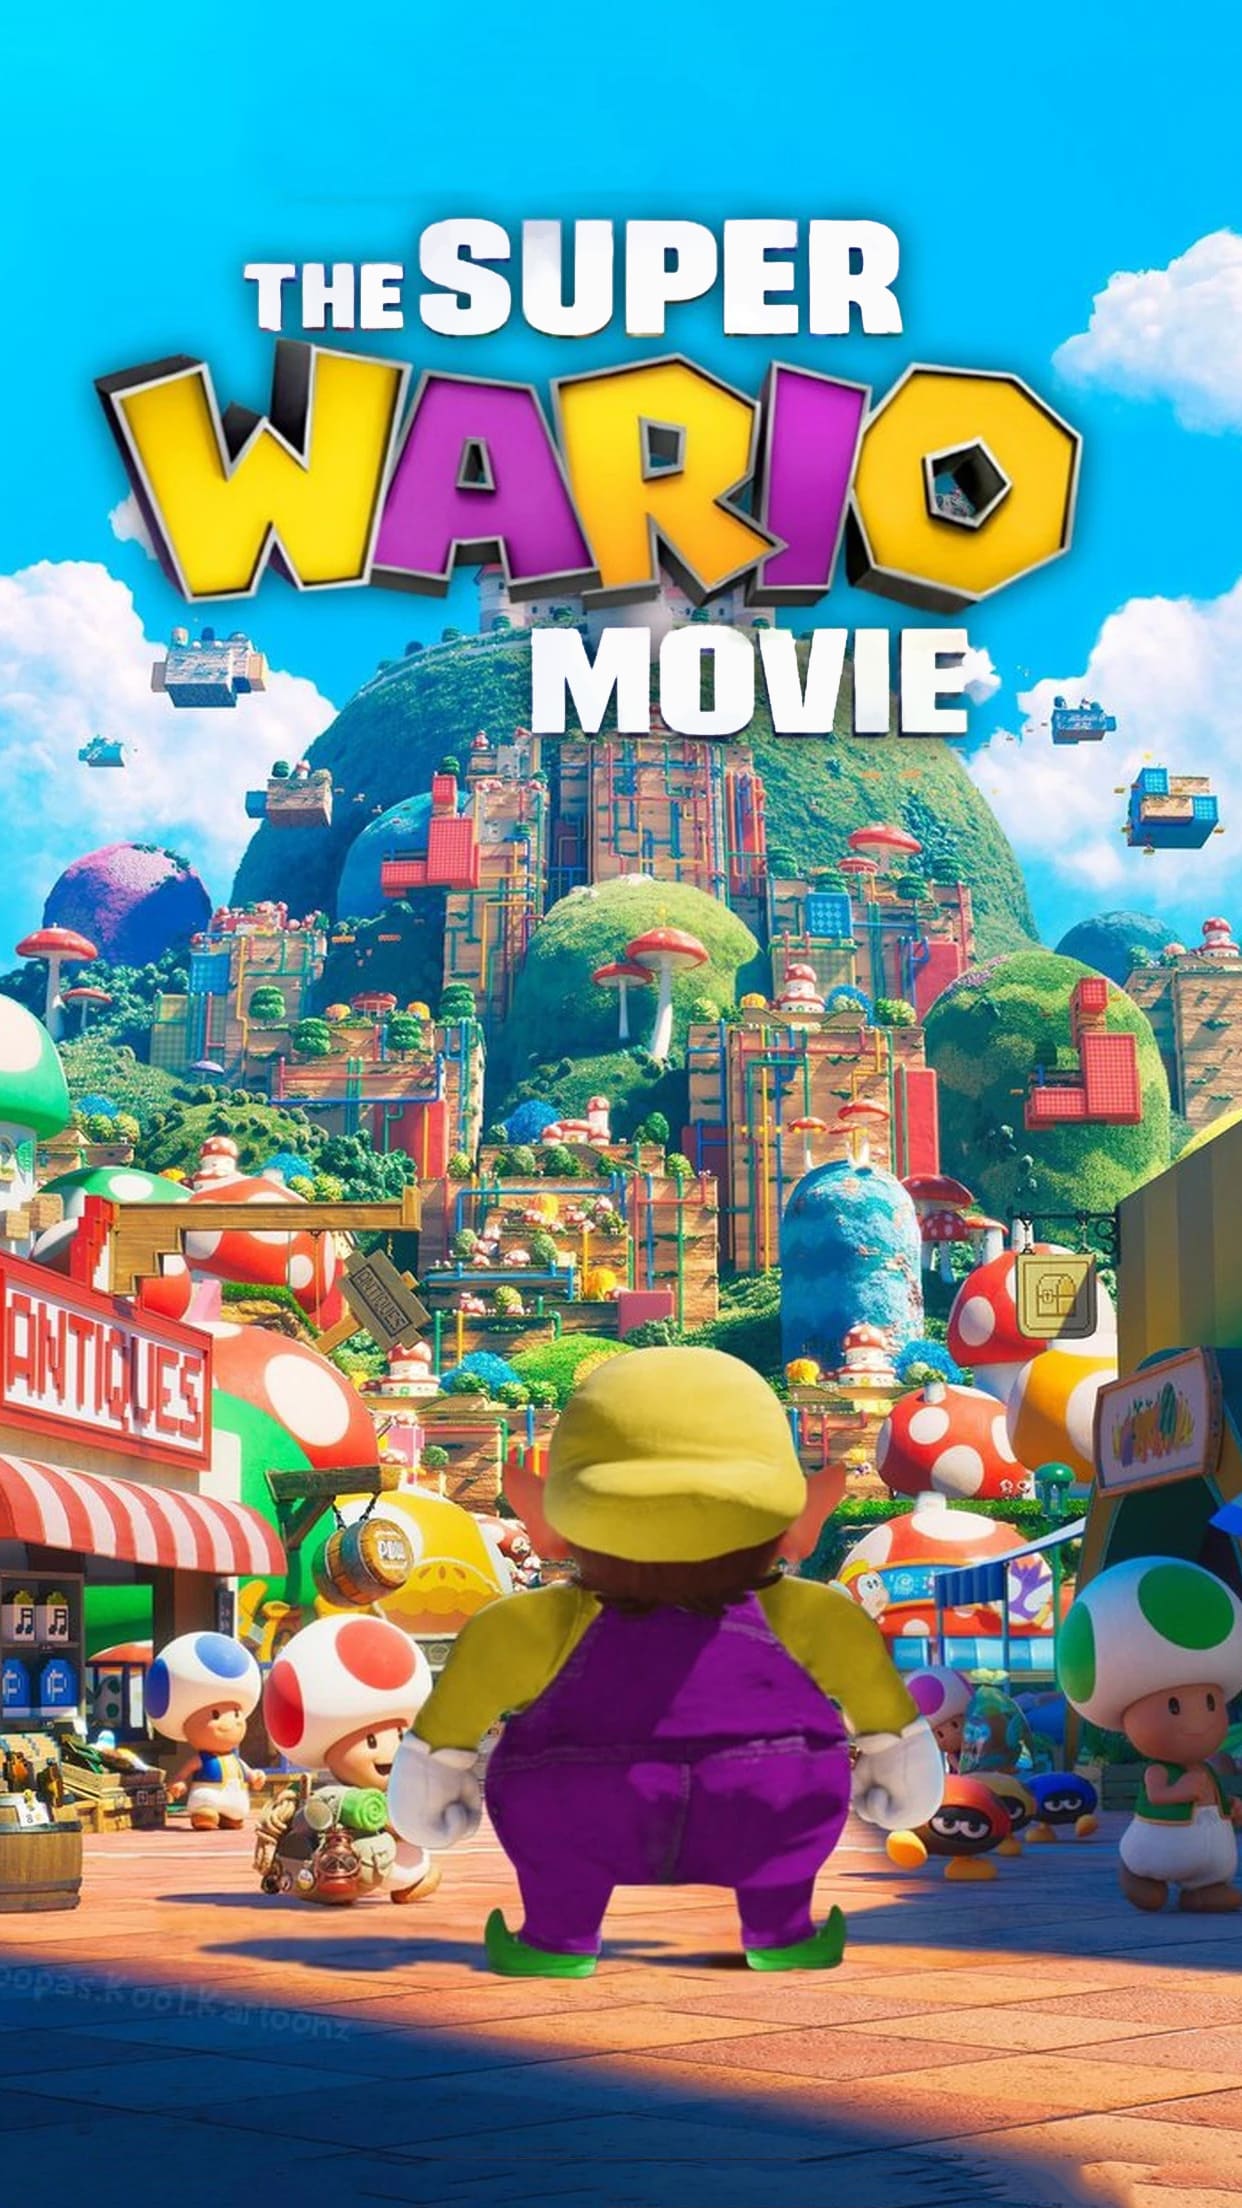 Super Mario Bros Movie wallpaper by zielinskijoseph on DeviantArt